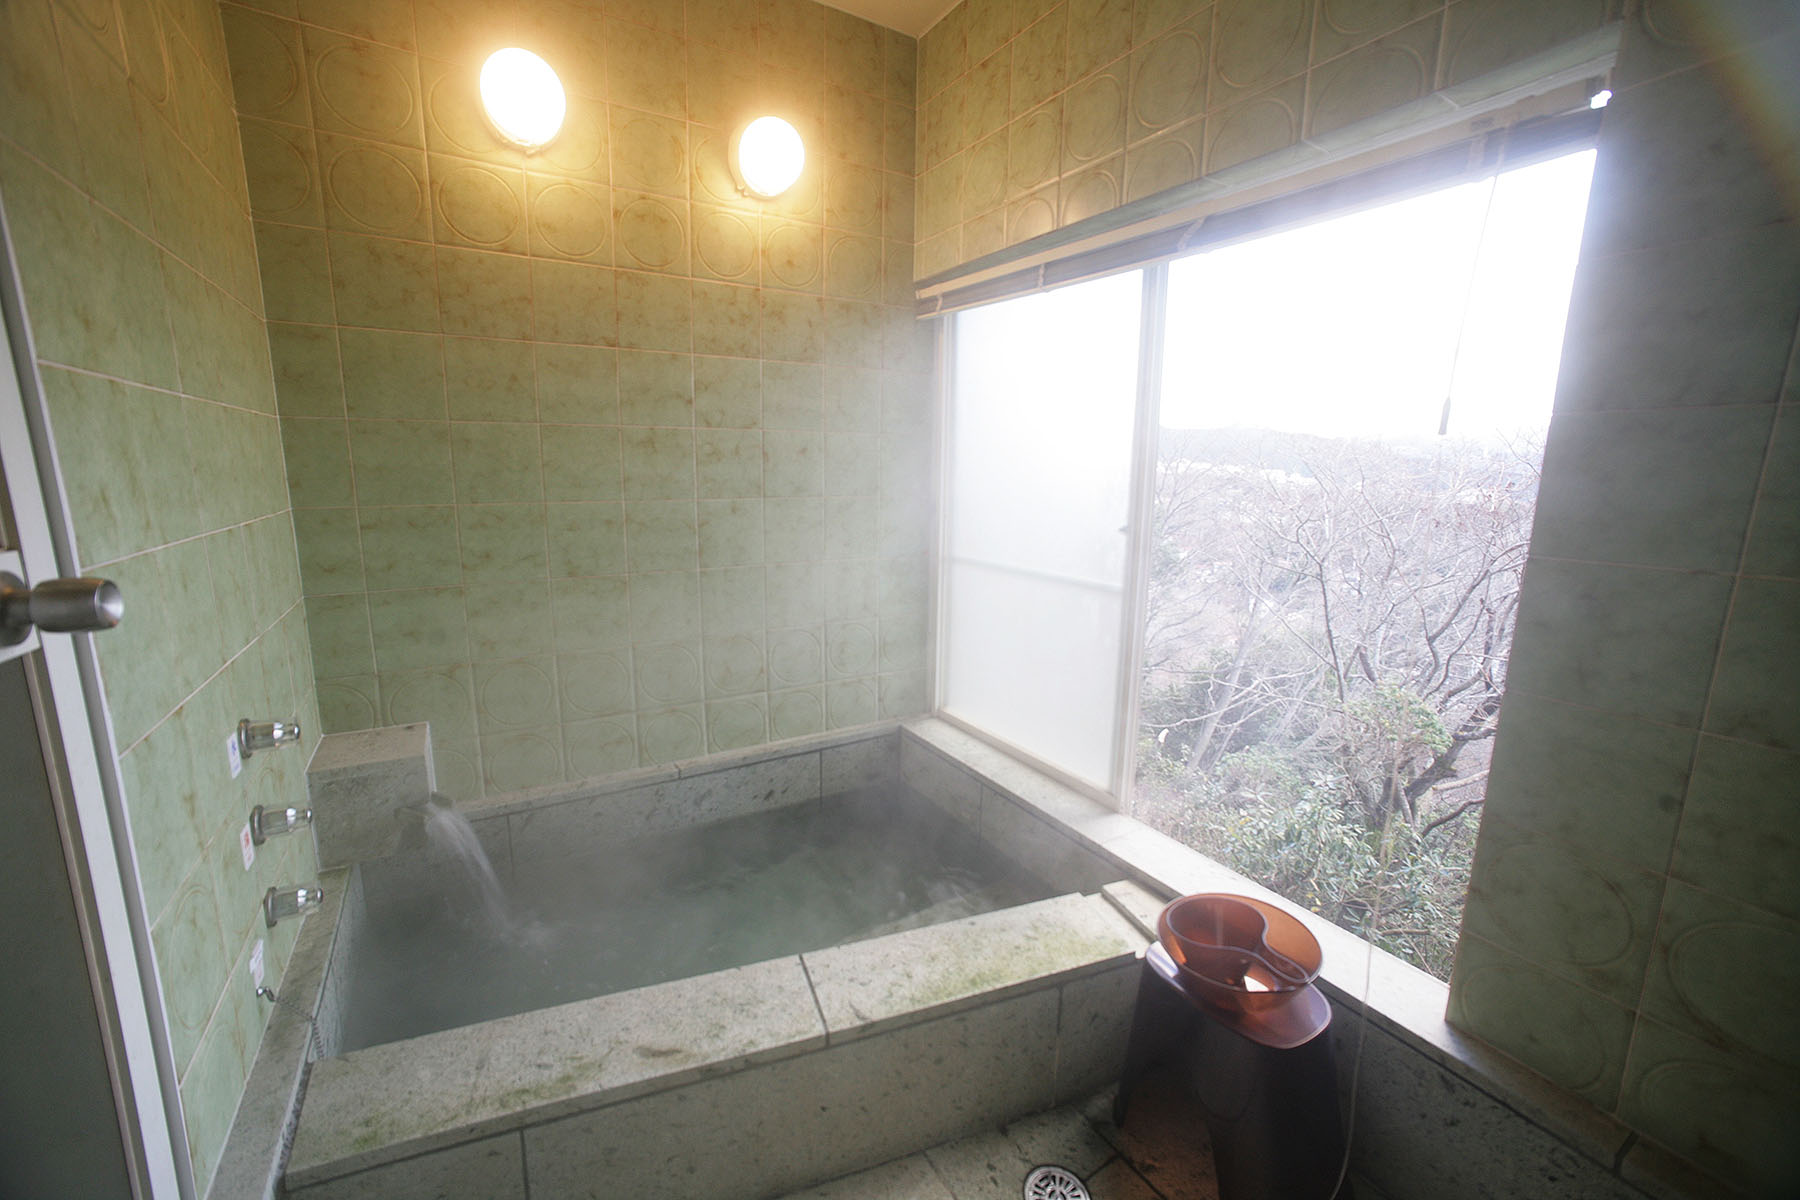 窓を開けてお風呂に入れます。貴重な総伊豆石造りのお風呂、お風呂から高く上がる花火もご覧いただけます。